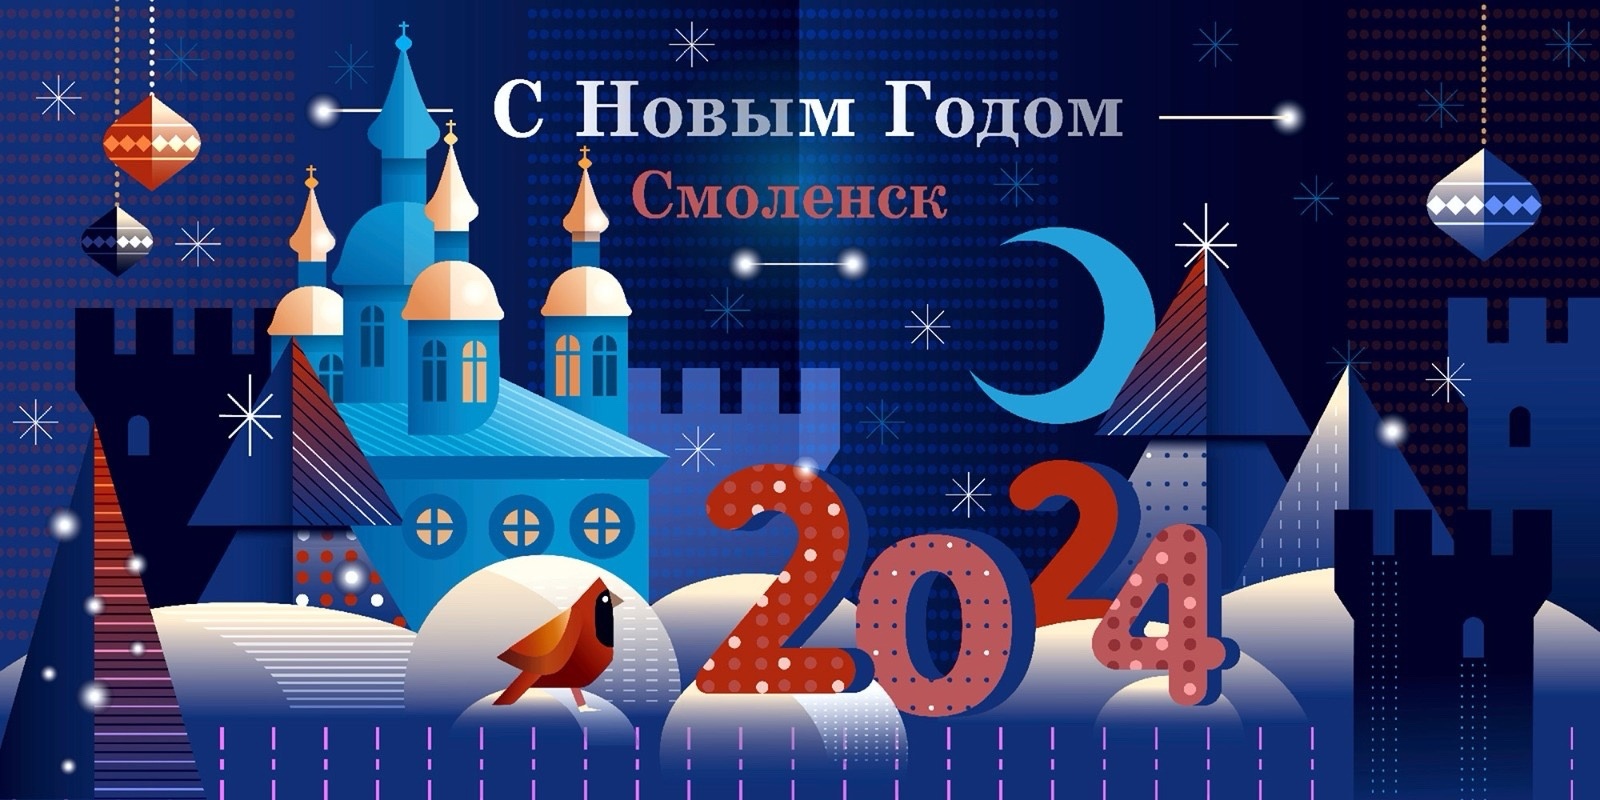 В Смоленске выбрали лучший новогодний плакат для украшения улиц города